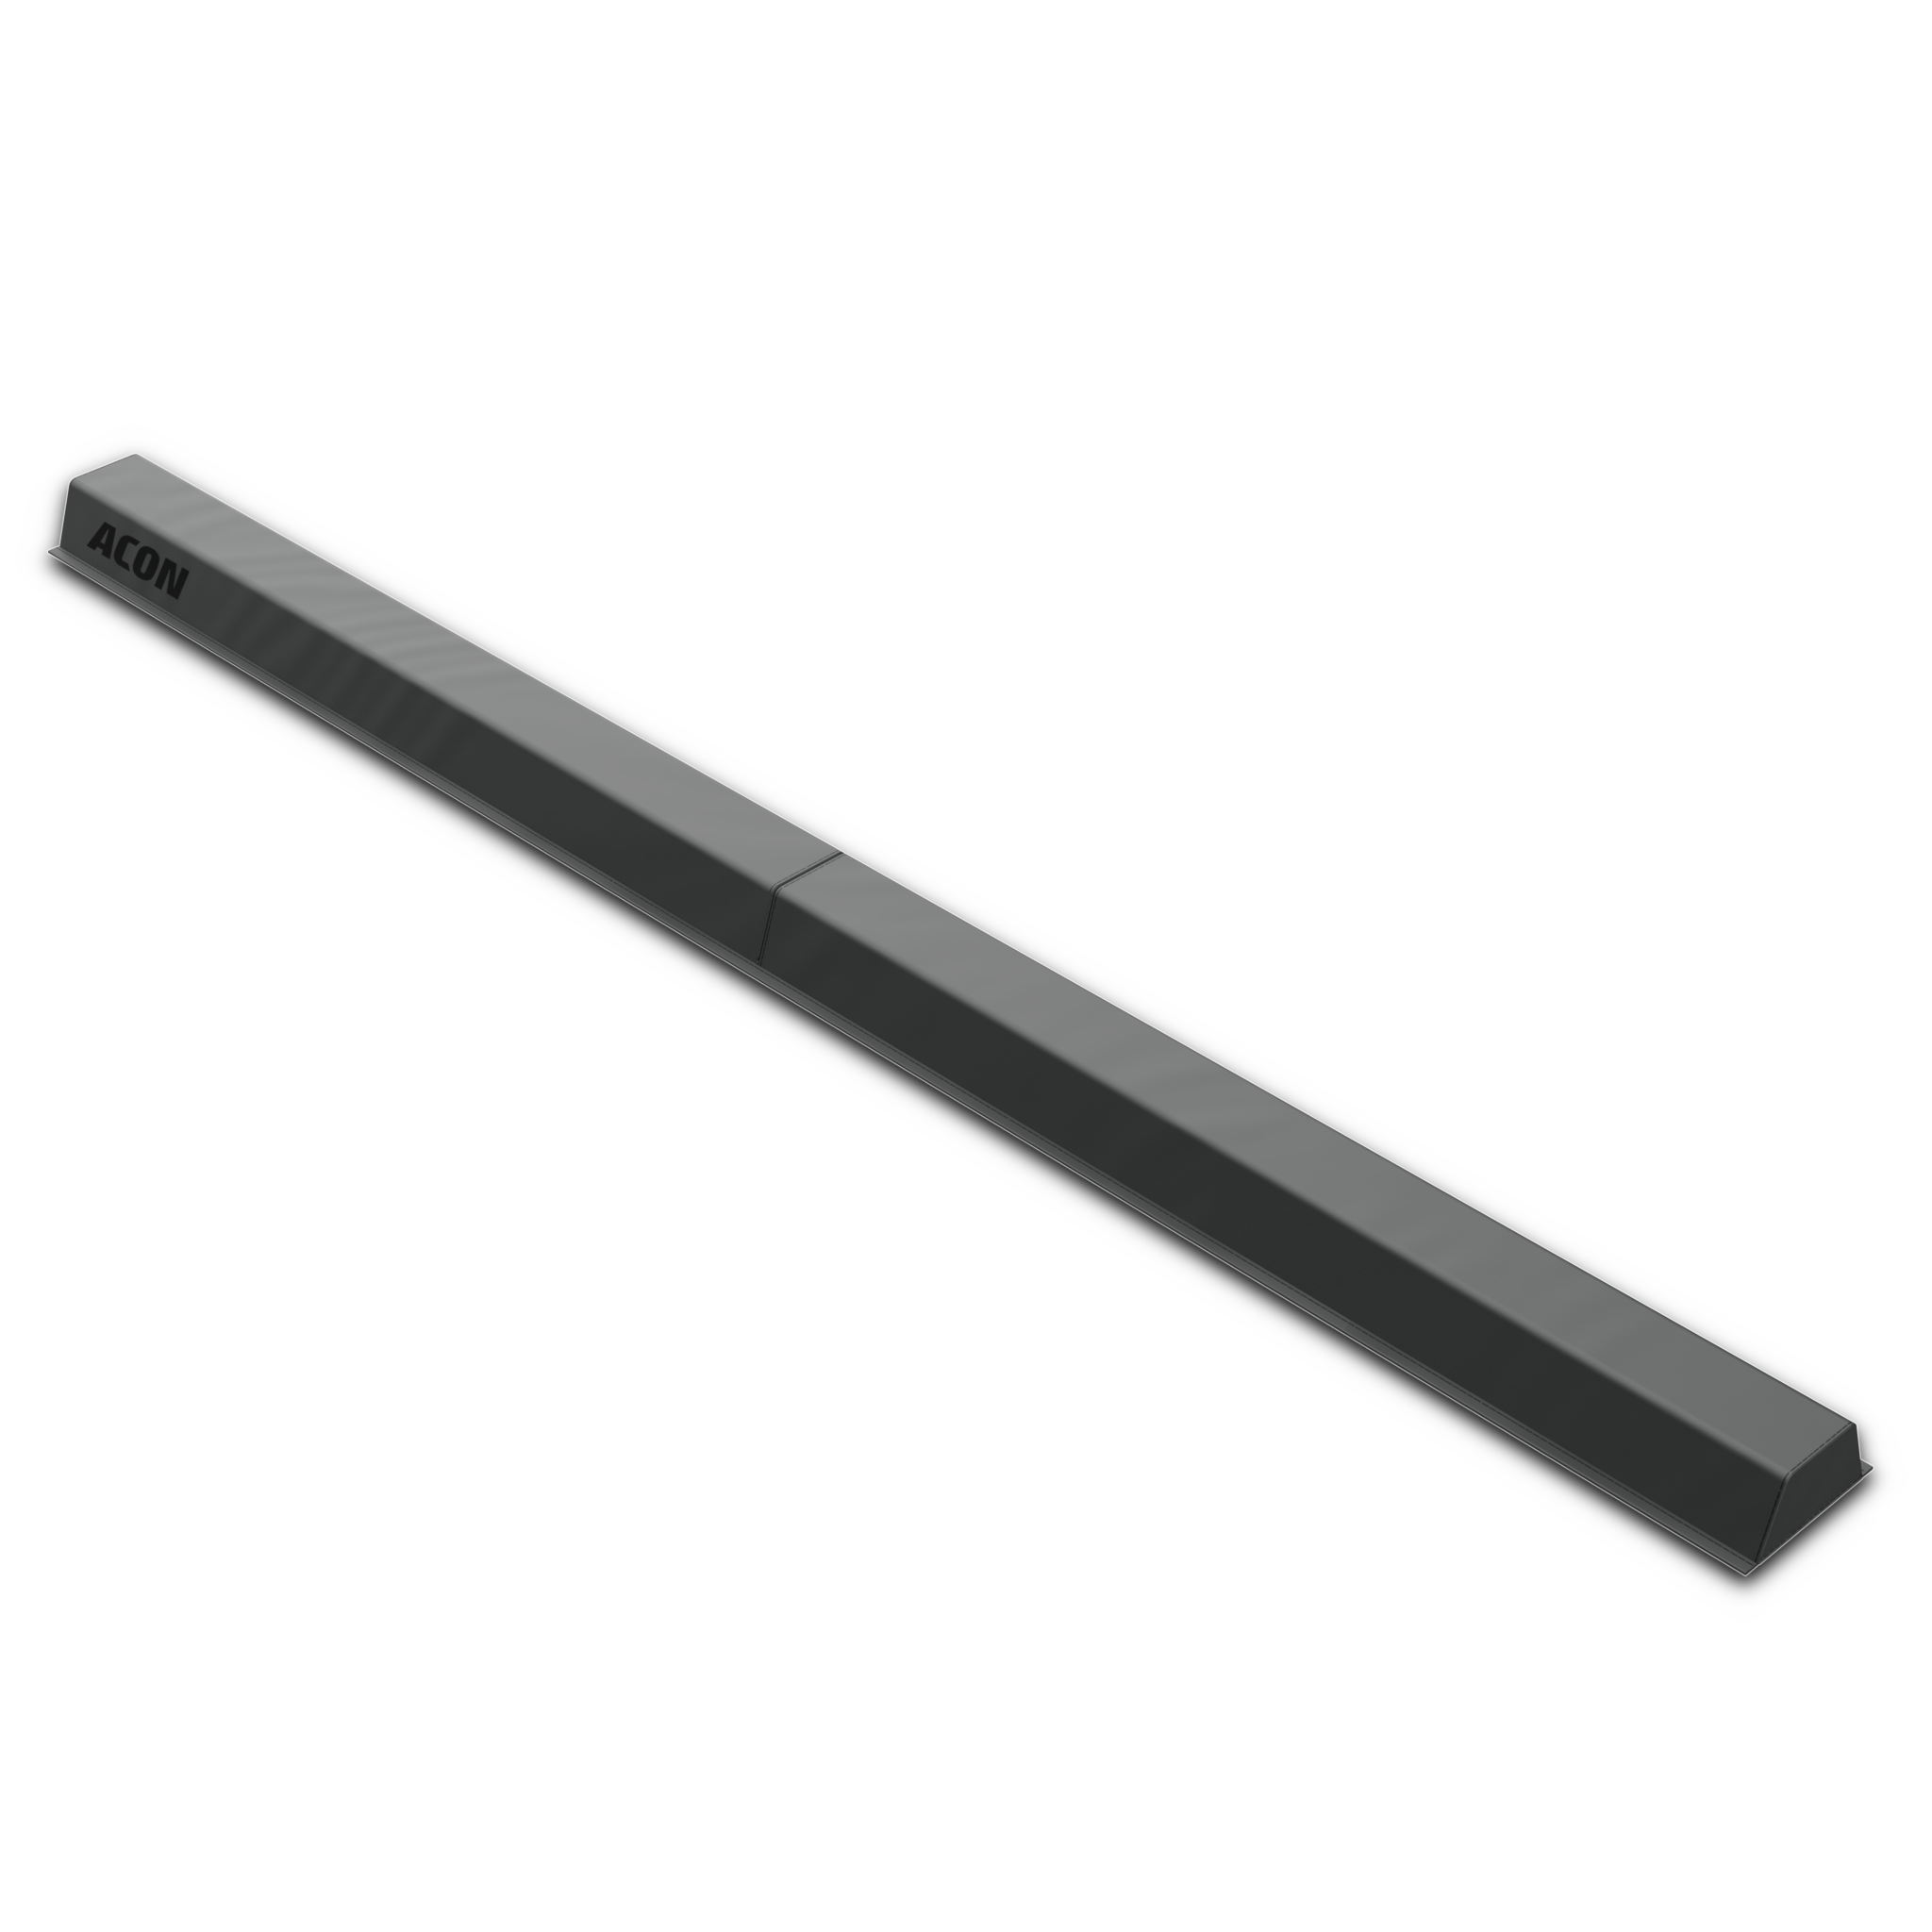 Produktabbildung des Acon Schwebebalkens Black Edition mit einem weißem Hintergrund.